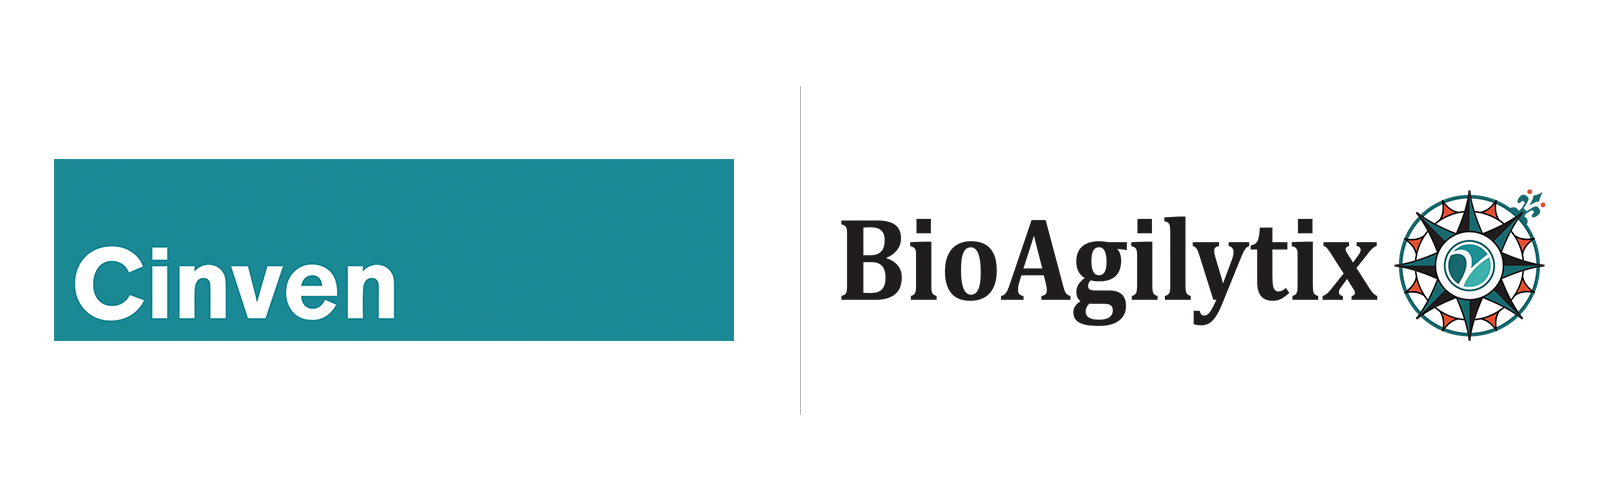 Cinven Completes Majority Investment in BioAgilytix